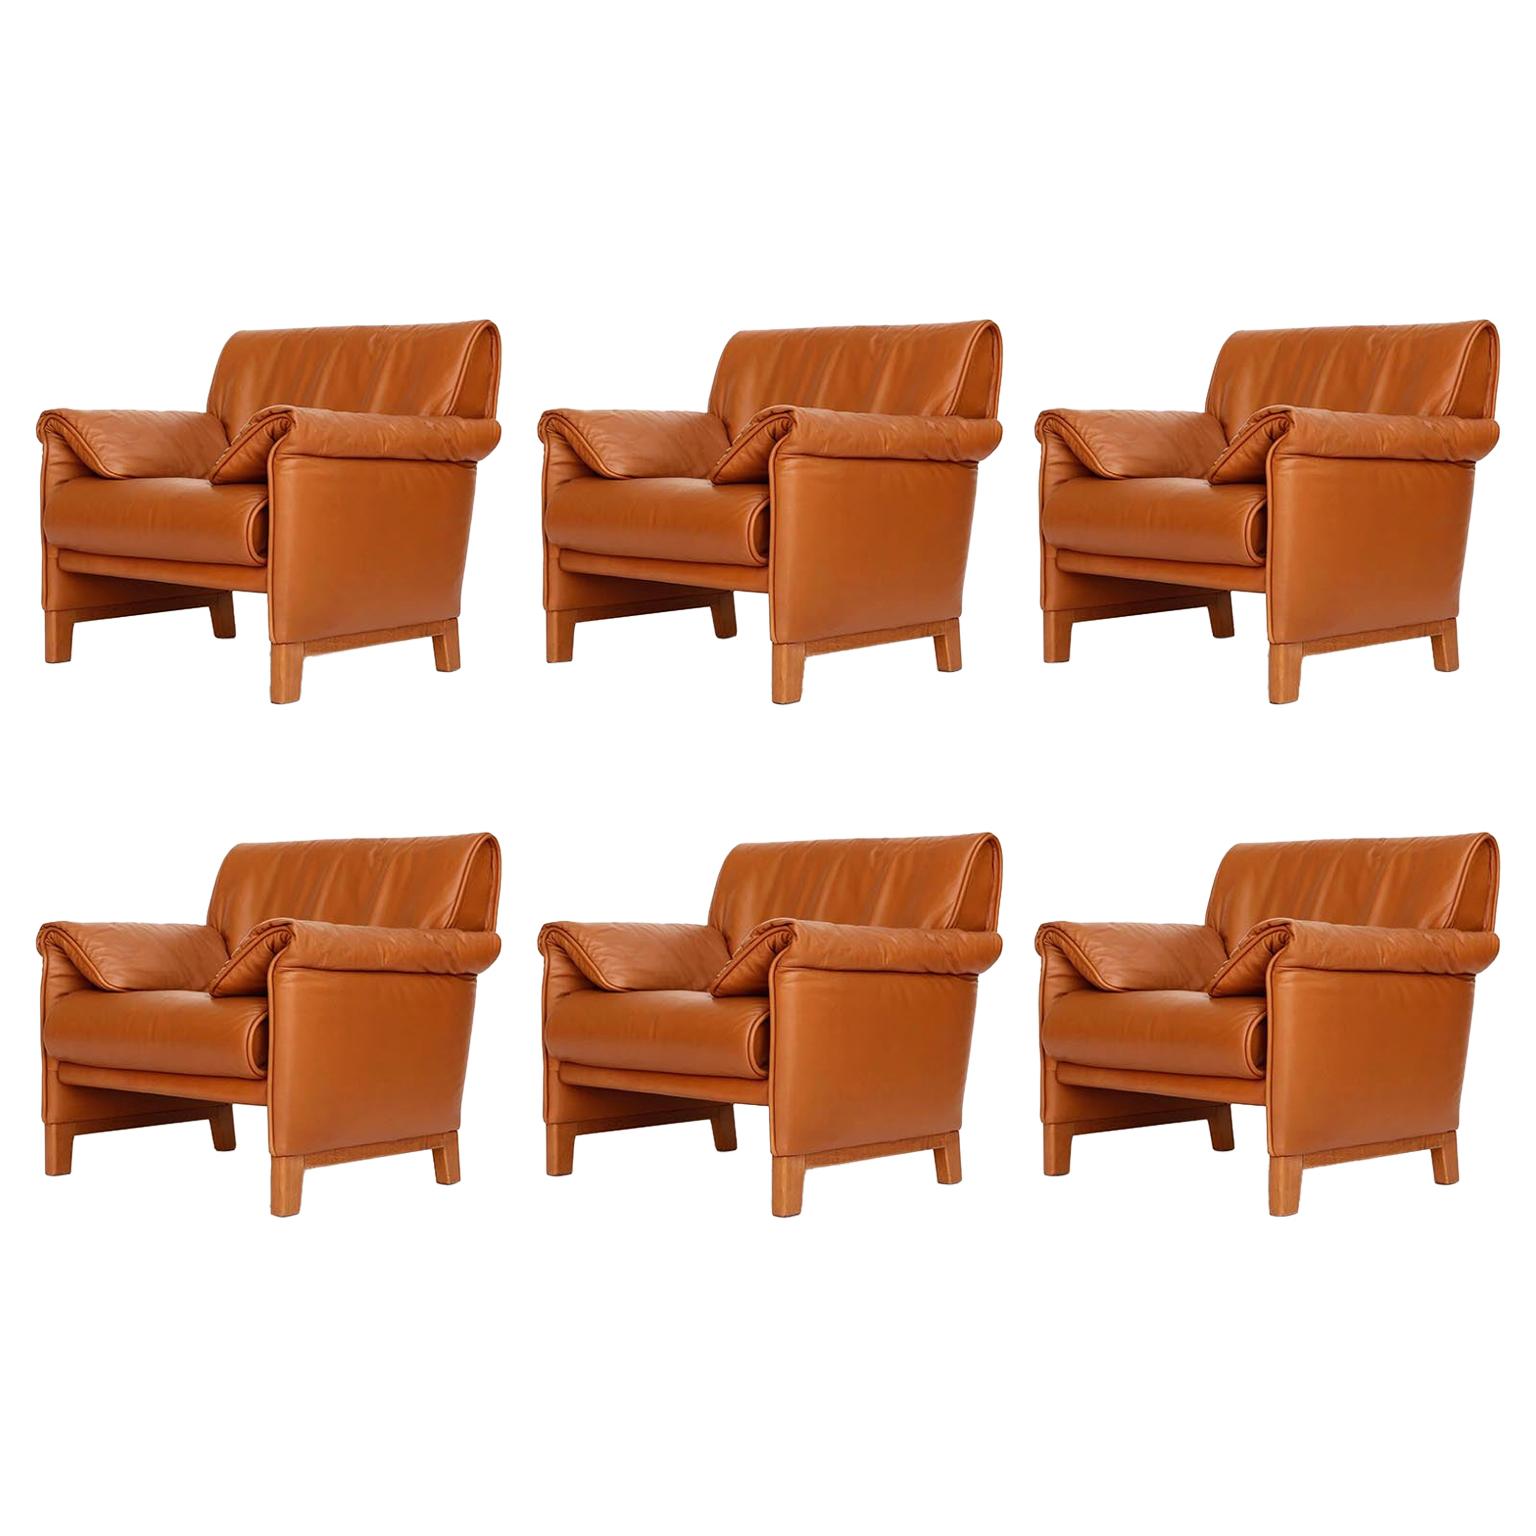 Four De Sede 'DS-14' Armchairs Lounge Chairs, Cognac Leather Teak, 1989